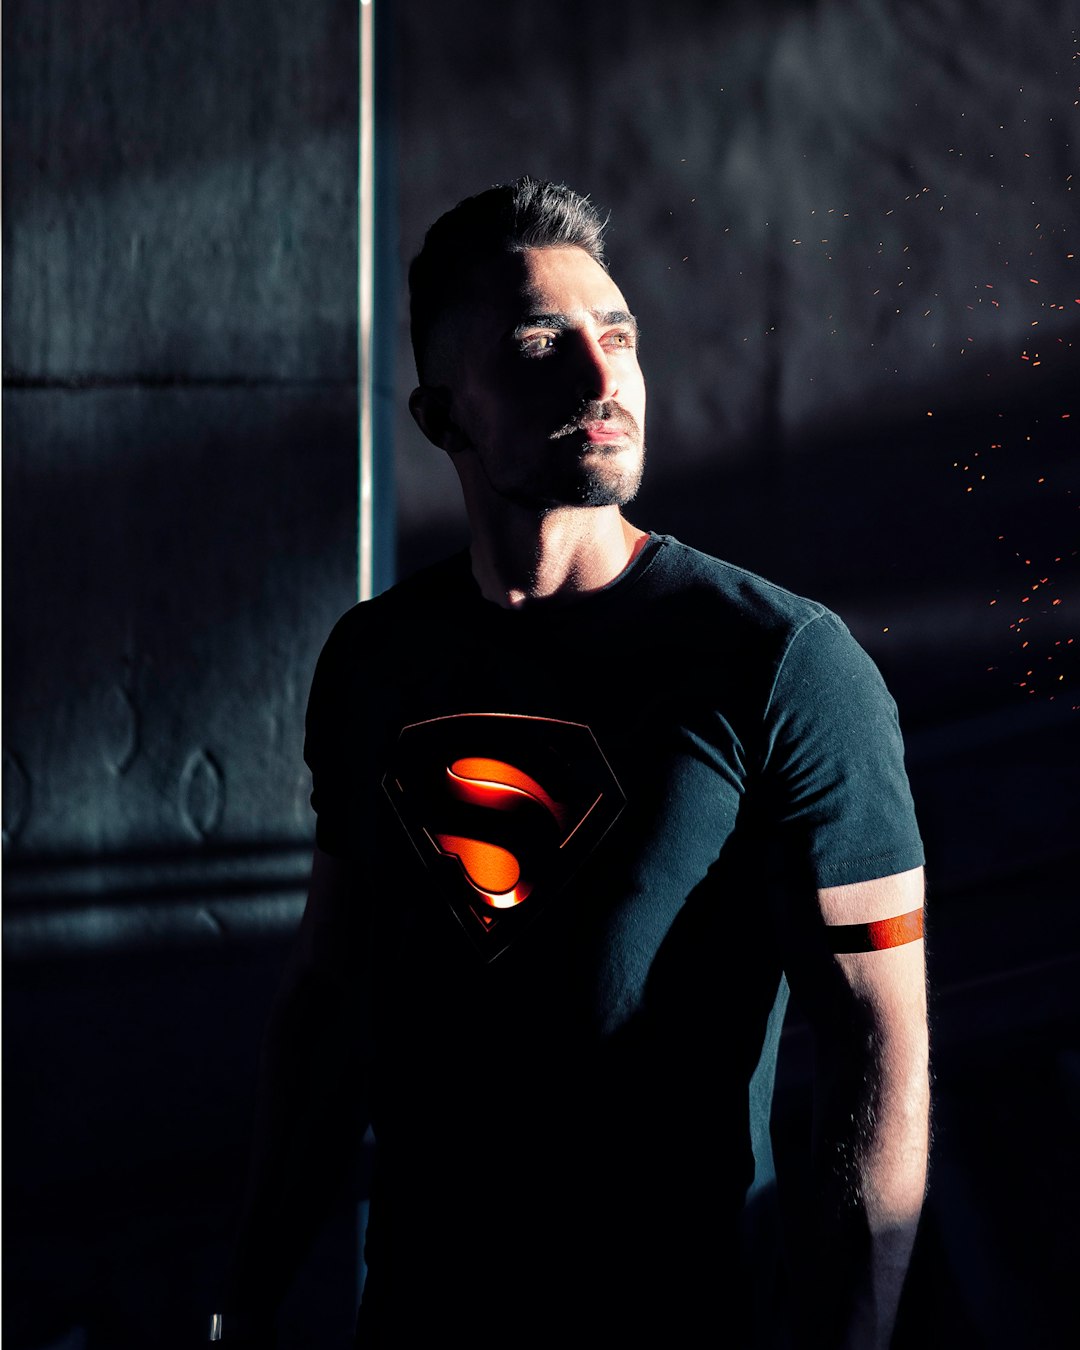 man wearing black Superman shirt